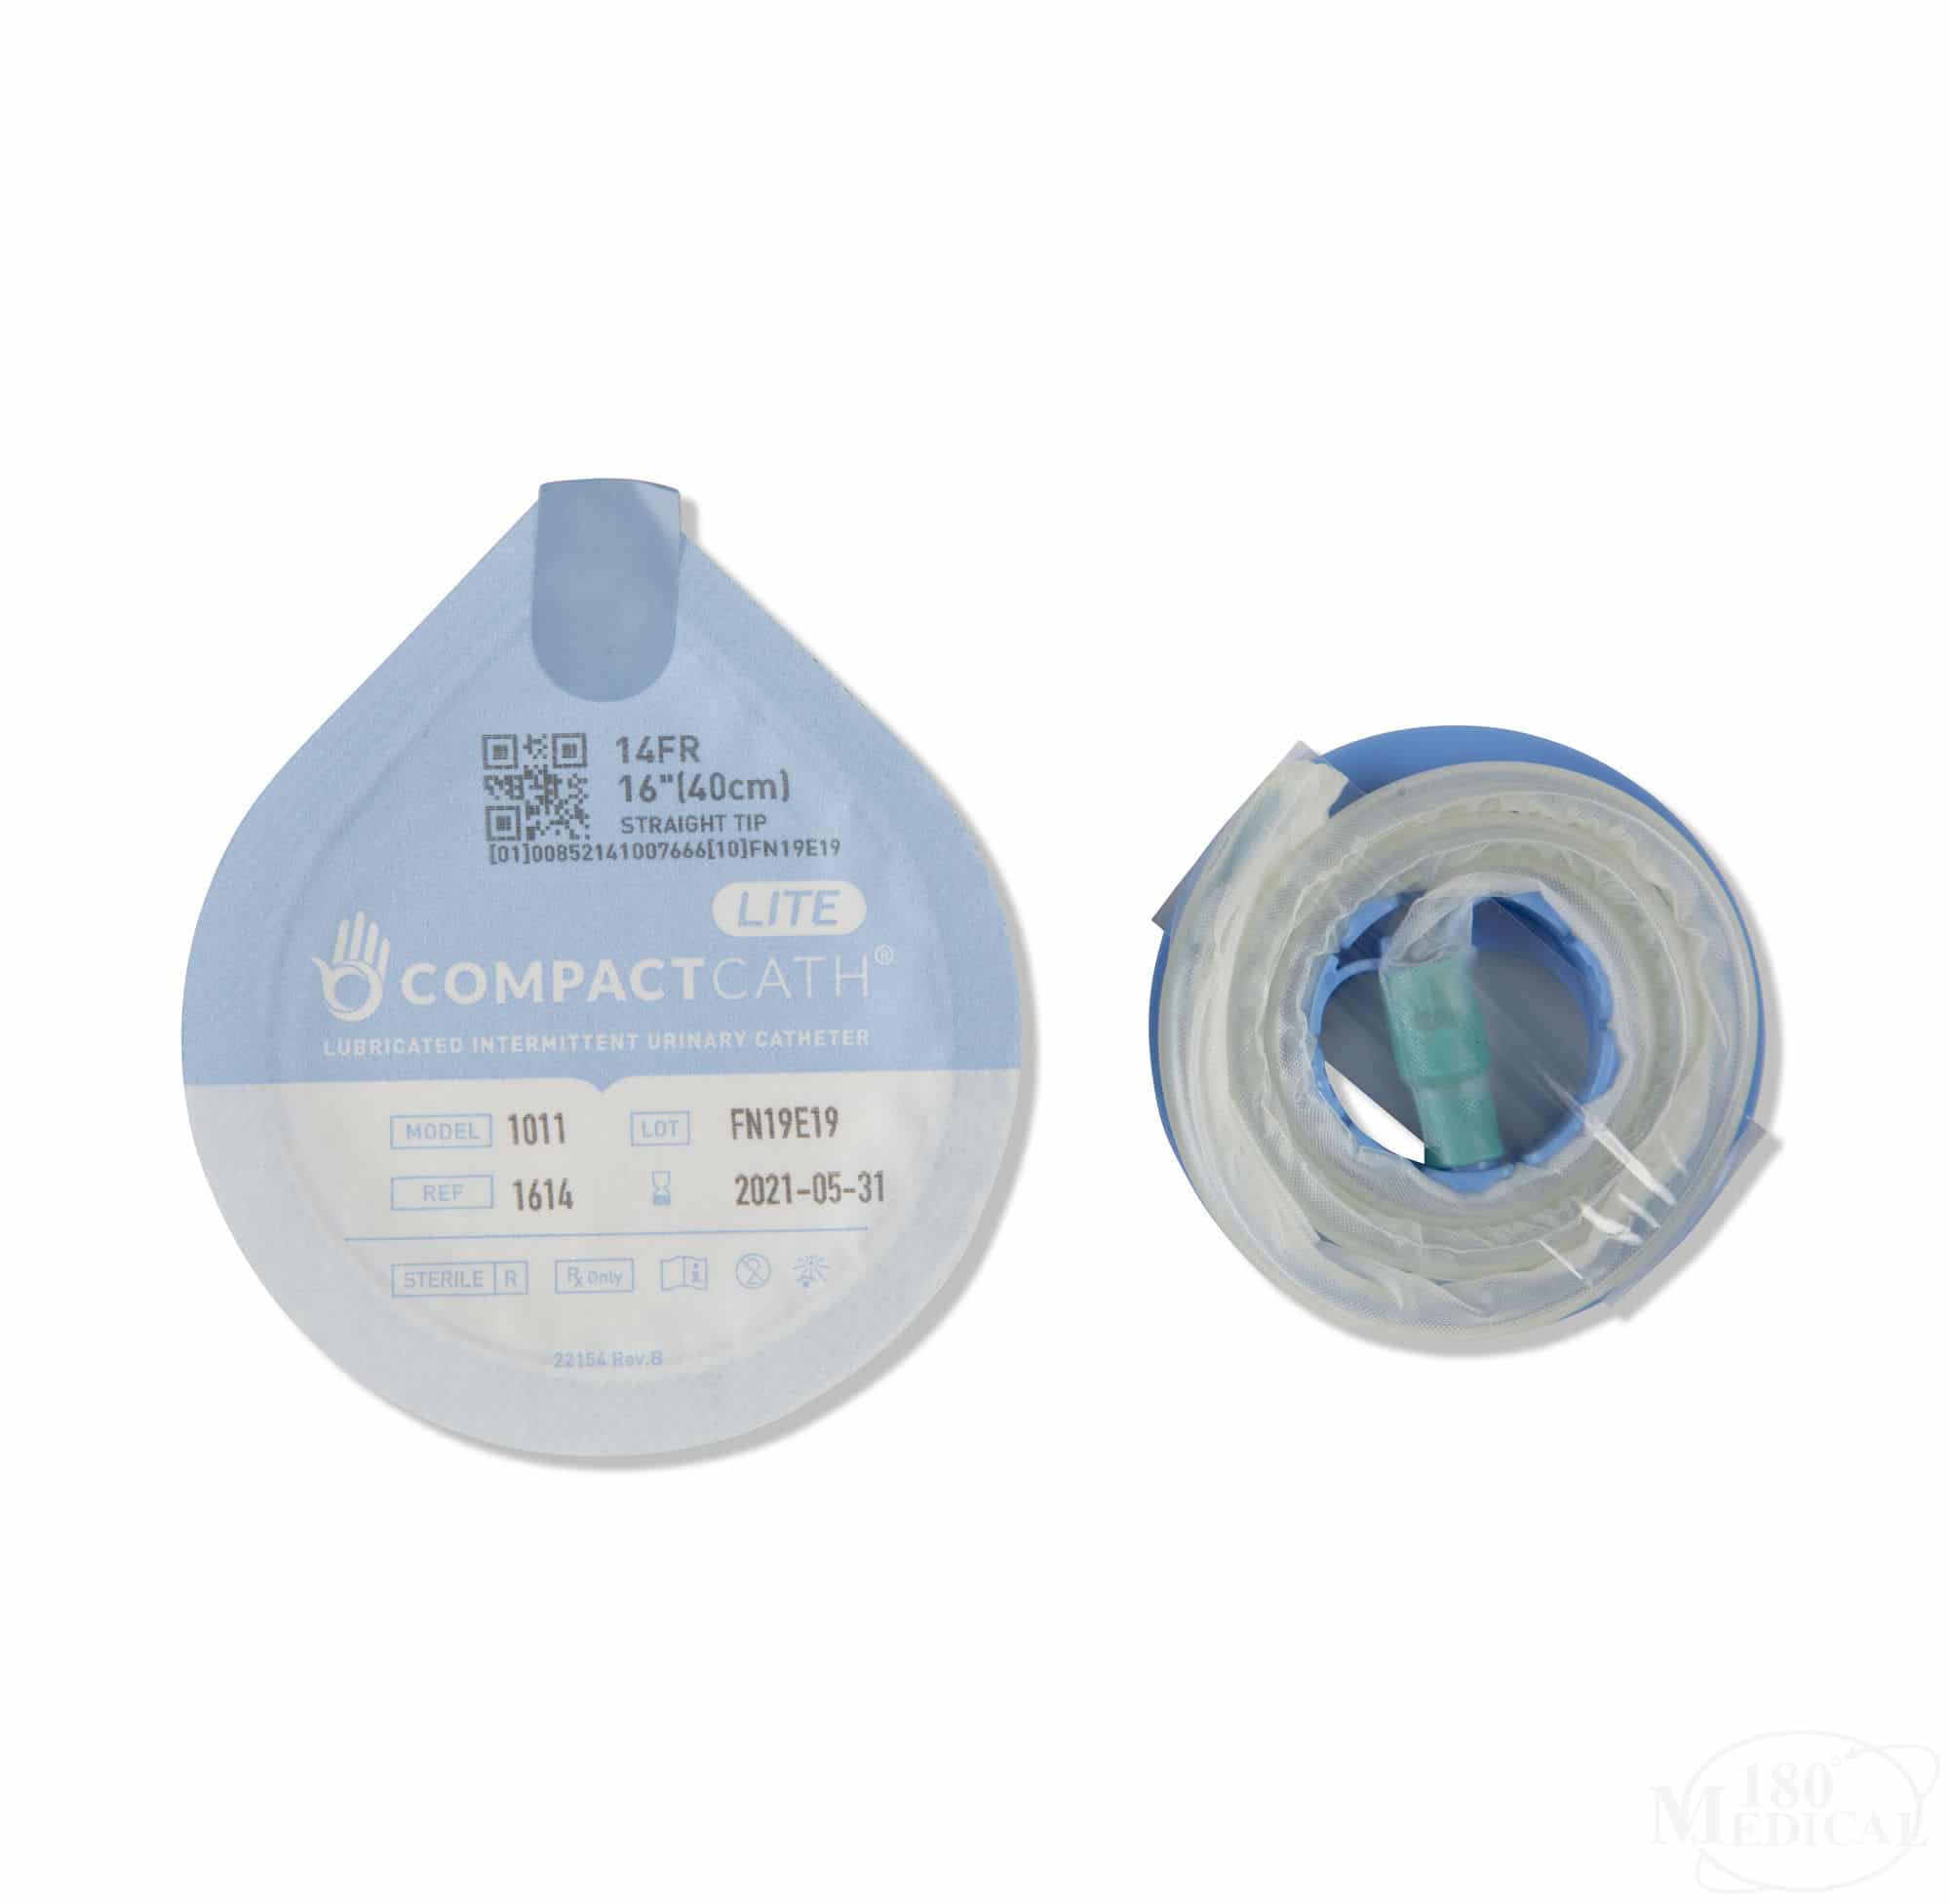 CompactCath LITE Catheter, Pocket Catheter